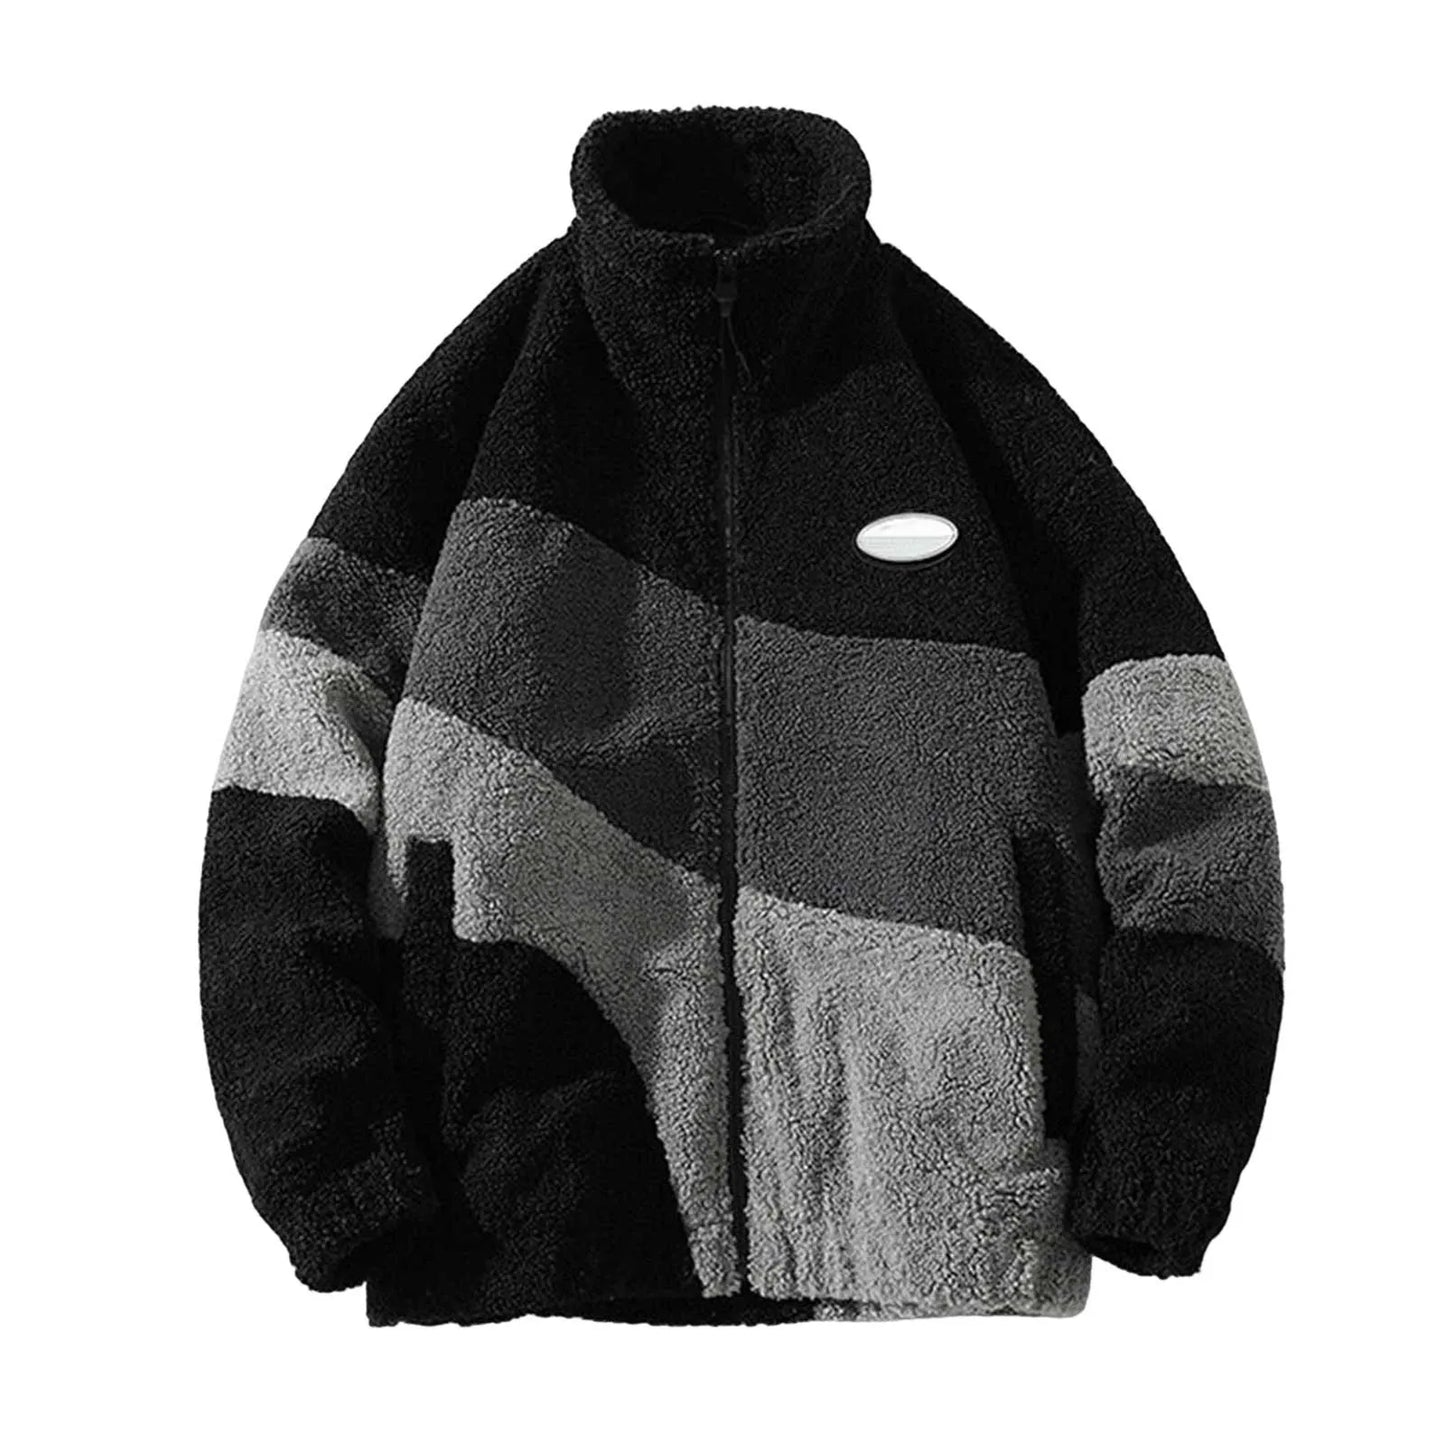 Warm Colour Block Fleece Jacket